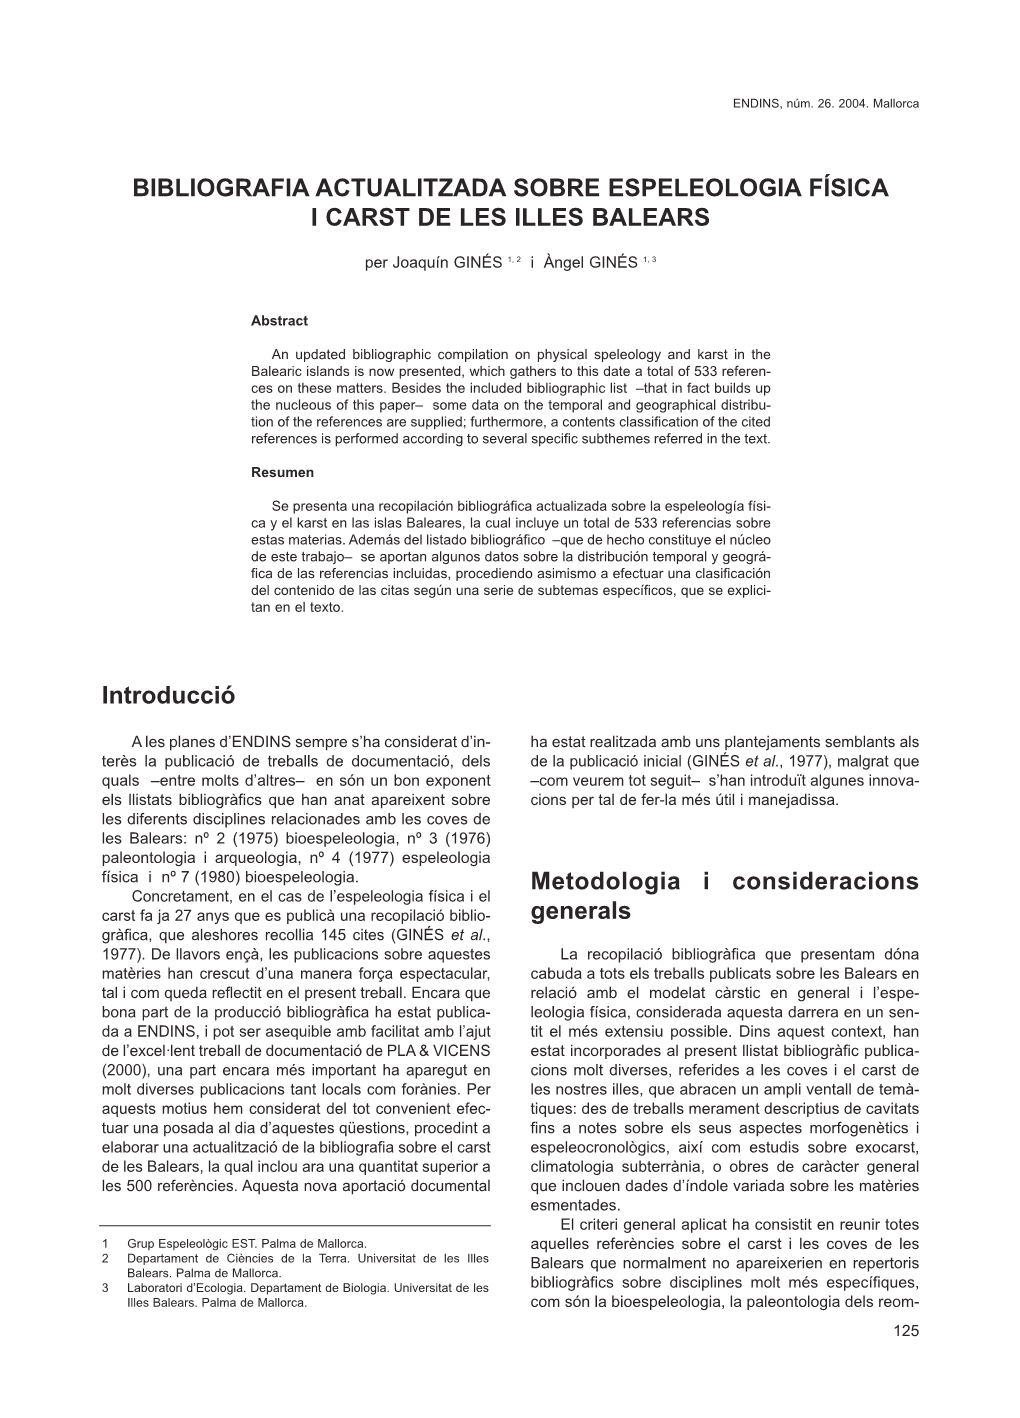 Bibliografia Actualitzada Sobre Espeleologia Física I Carst De Les Illes Balears